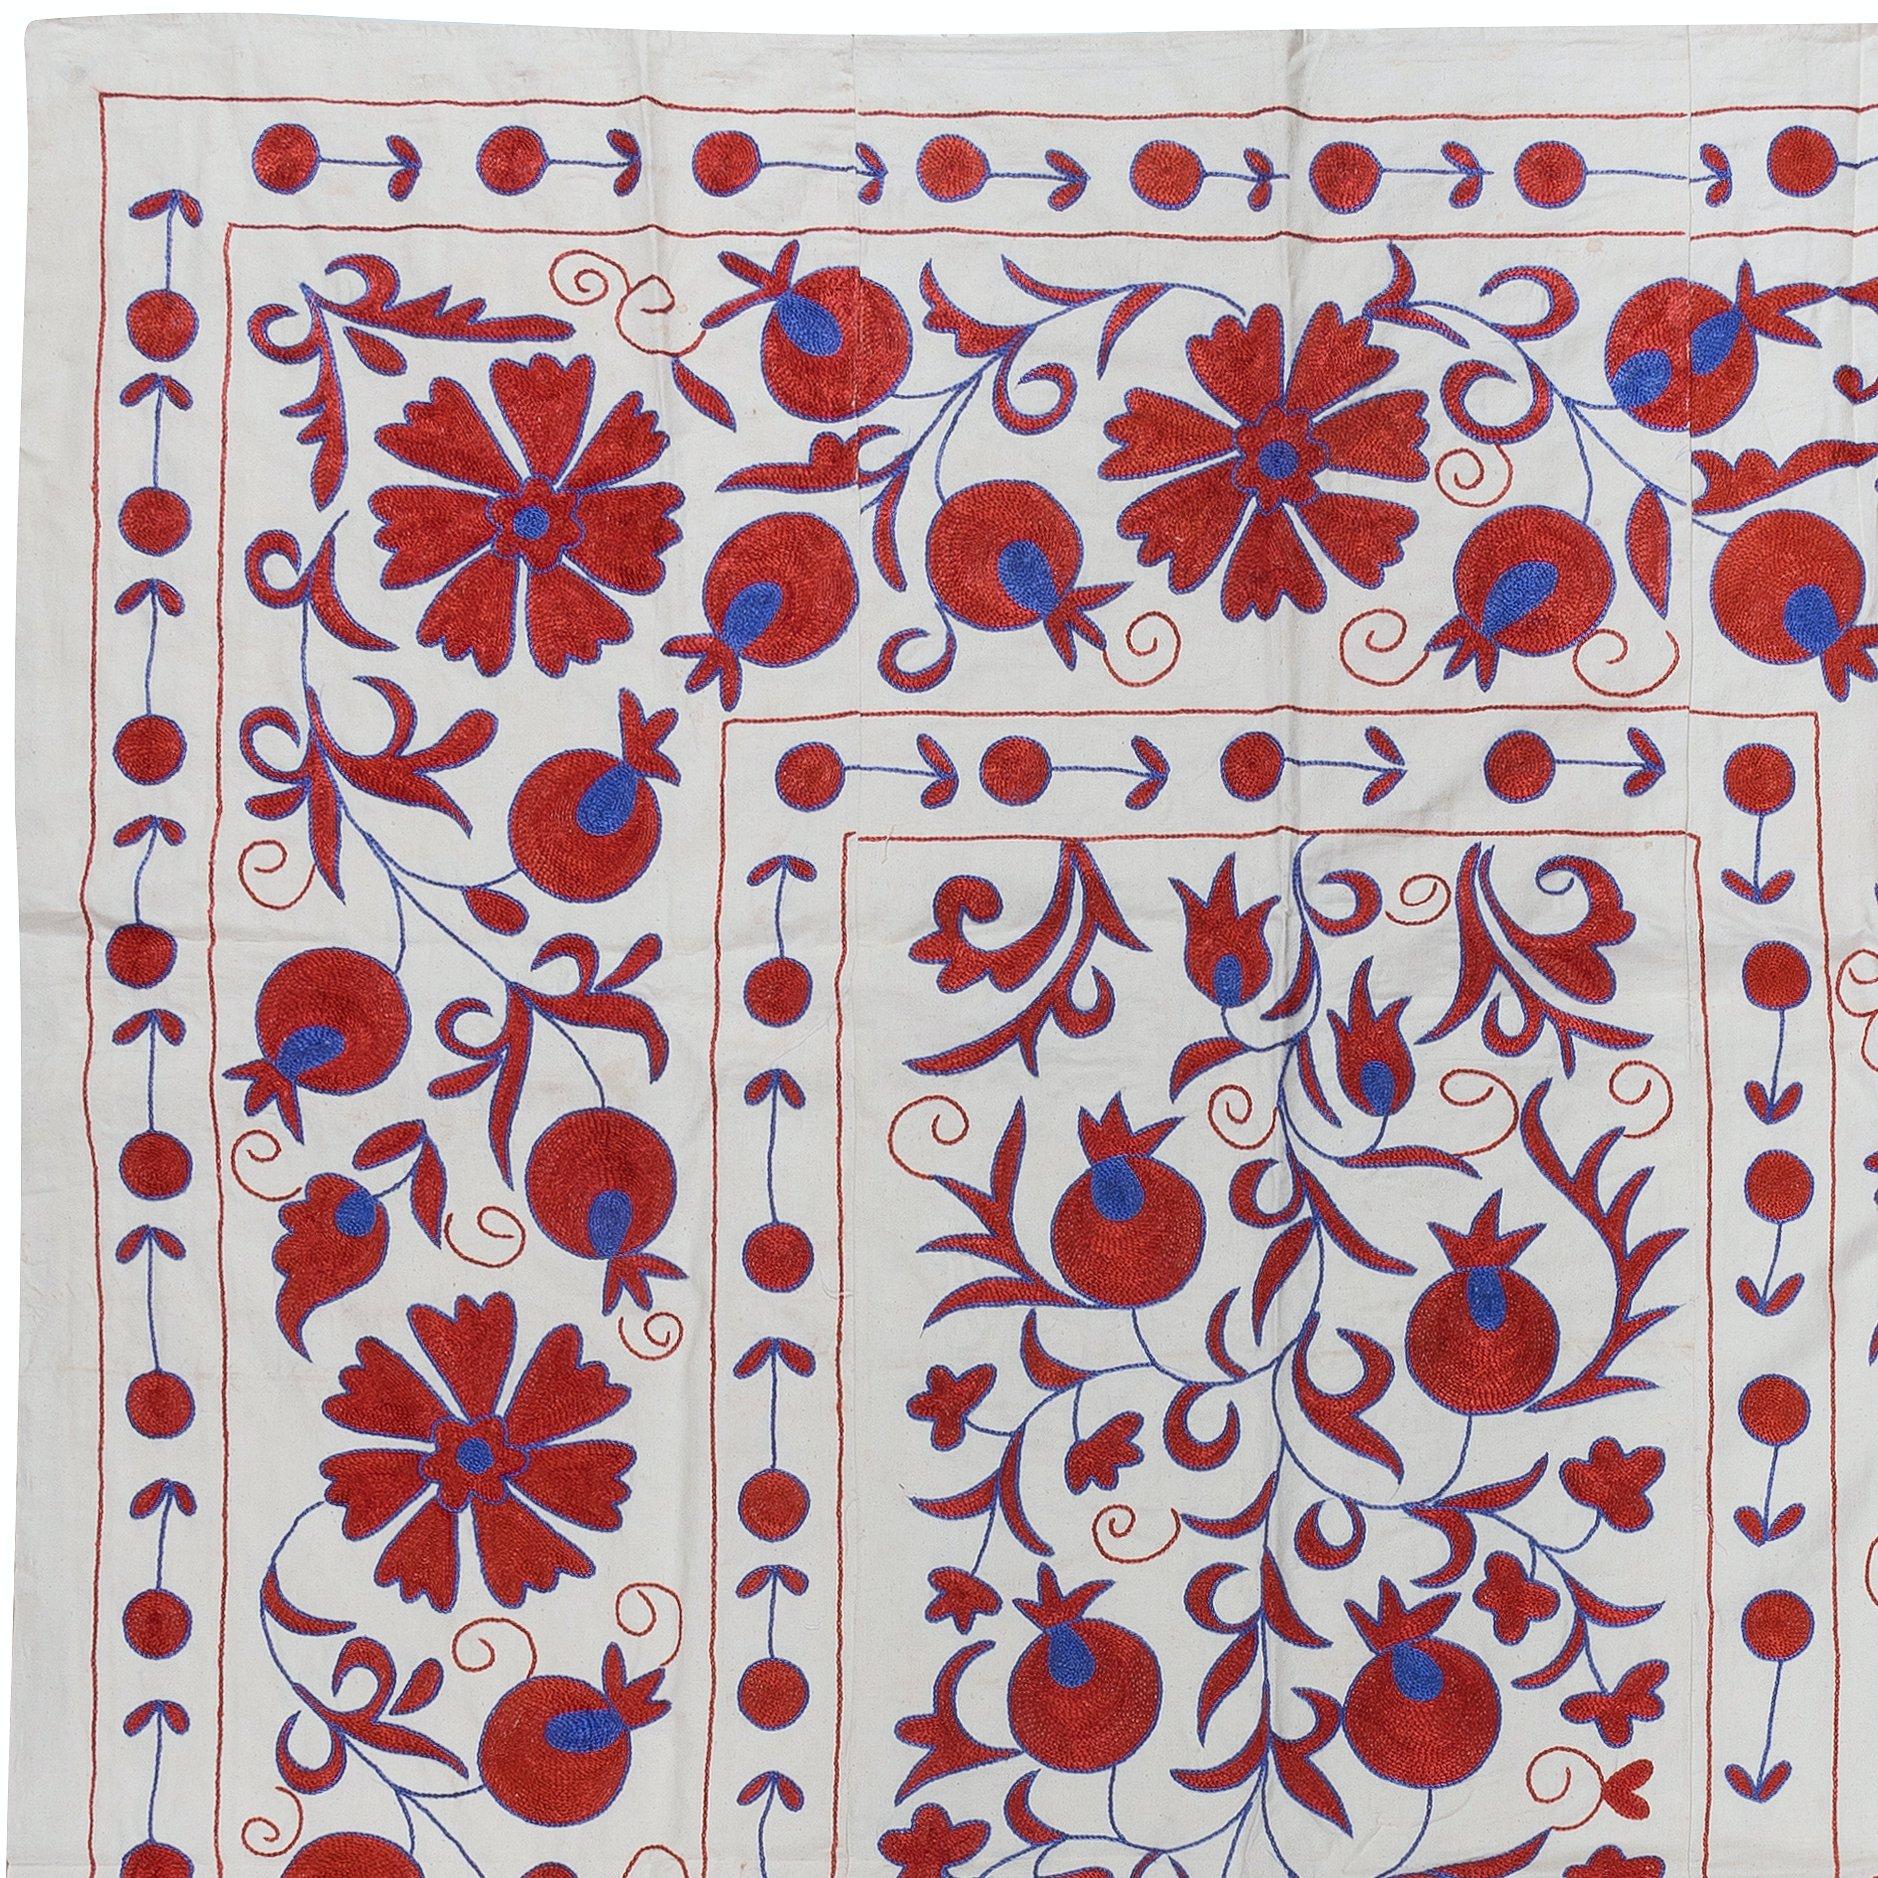 Wir stellen unseren exquisiten neuen handbestickten Suzani-Wandbehang vor, ein fesselndes Stück, das alte Handwerkskunst mit moderner Kunstfertigkeit verbindet. Dieses bestickte Tuch ist nicht nur ein Suzani-Tuch, sondern auch ein bemerkenswerter